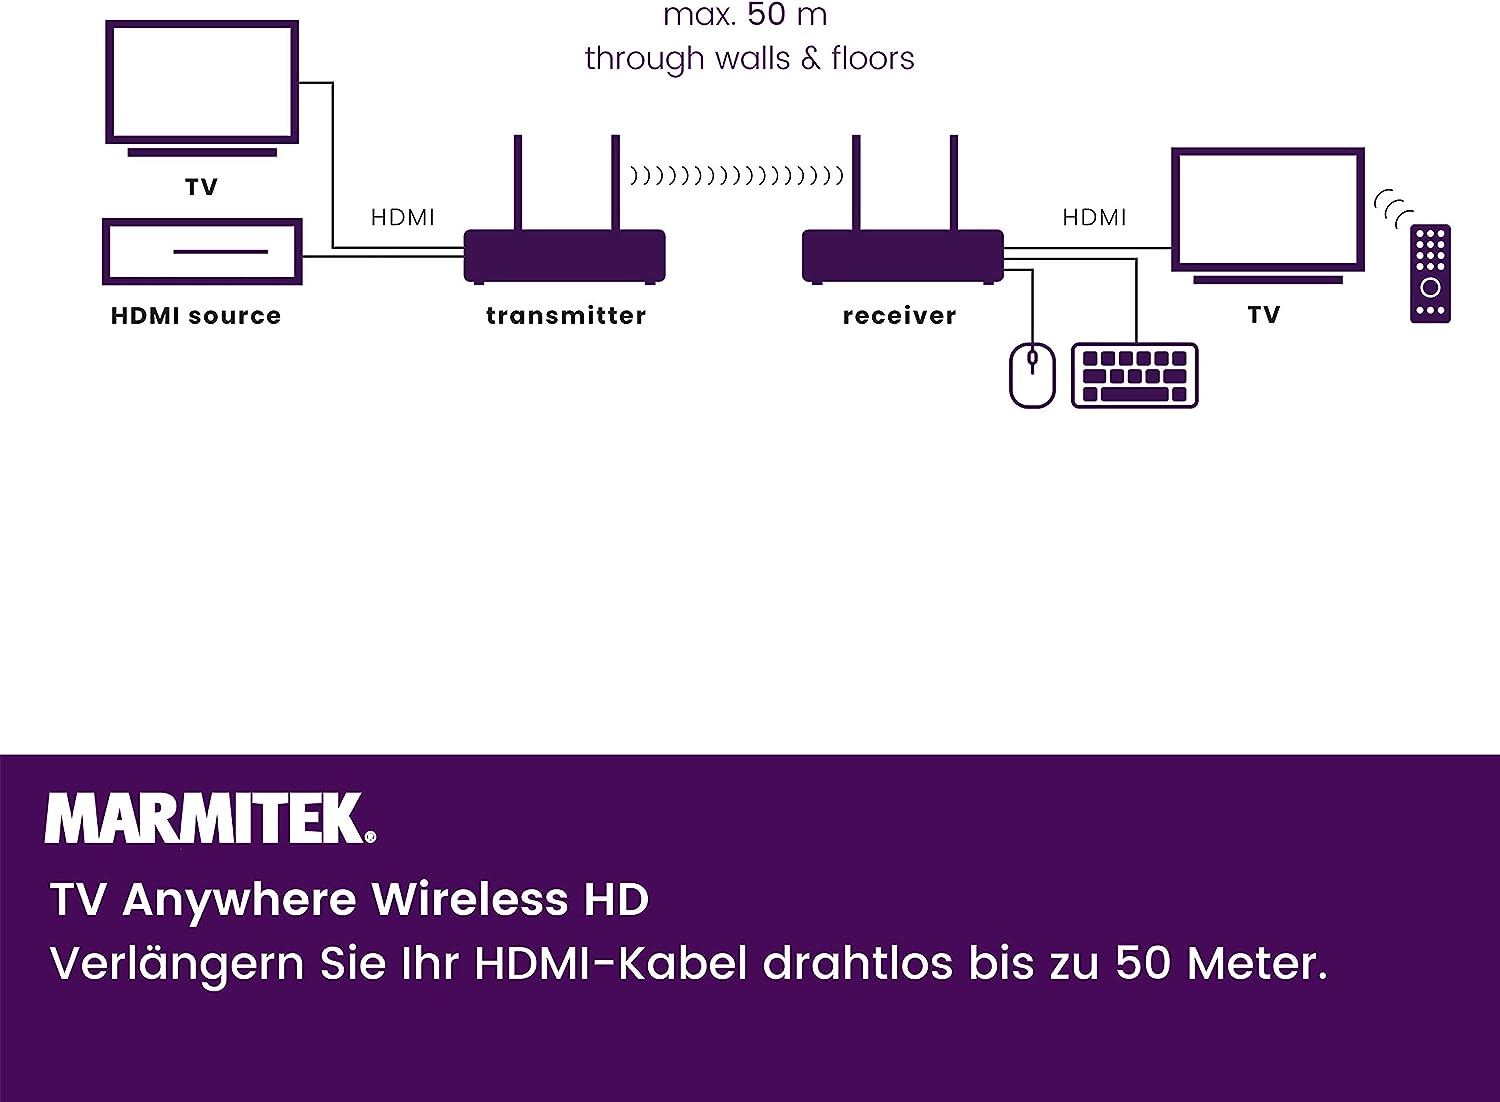 Marmitek Drathlose HDMI Extender - Marmitek TV Anywhere Wireless HD - 1080p Full HD - Flächendeckendes Bereich - Infrarot Rückgabefunktion - USB Tastatur und Maus Unterstützung Old version